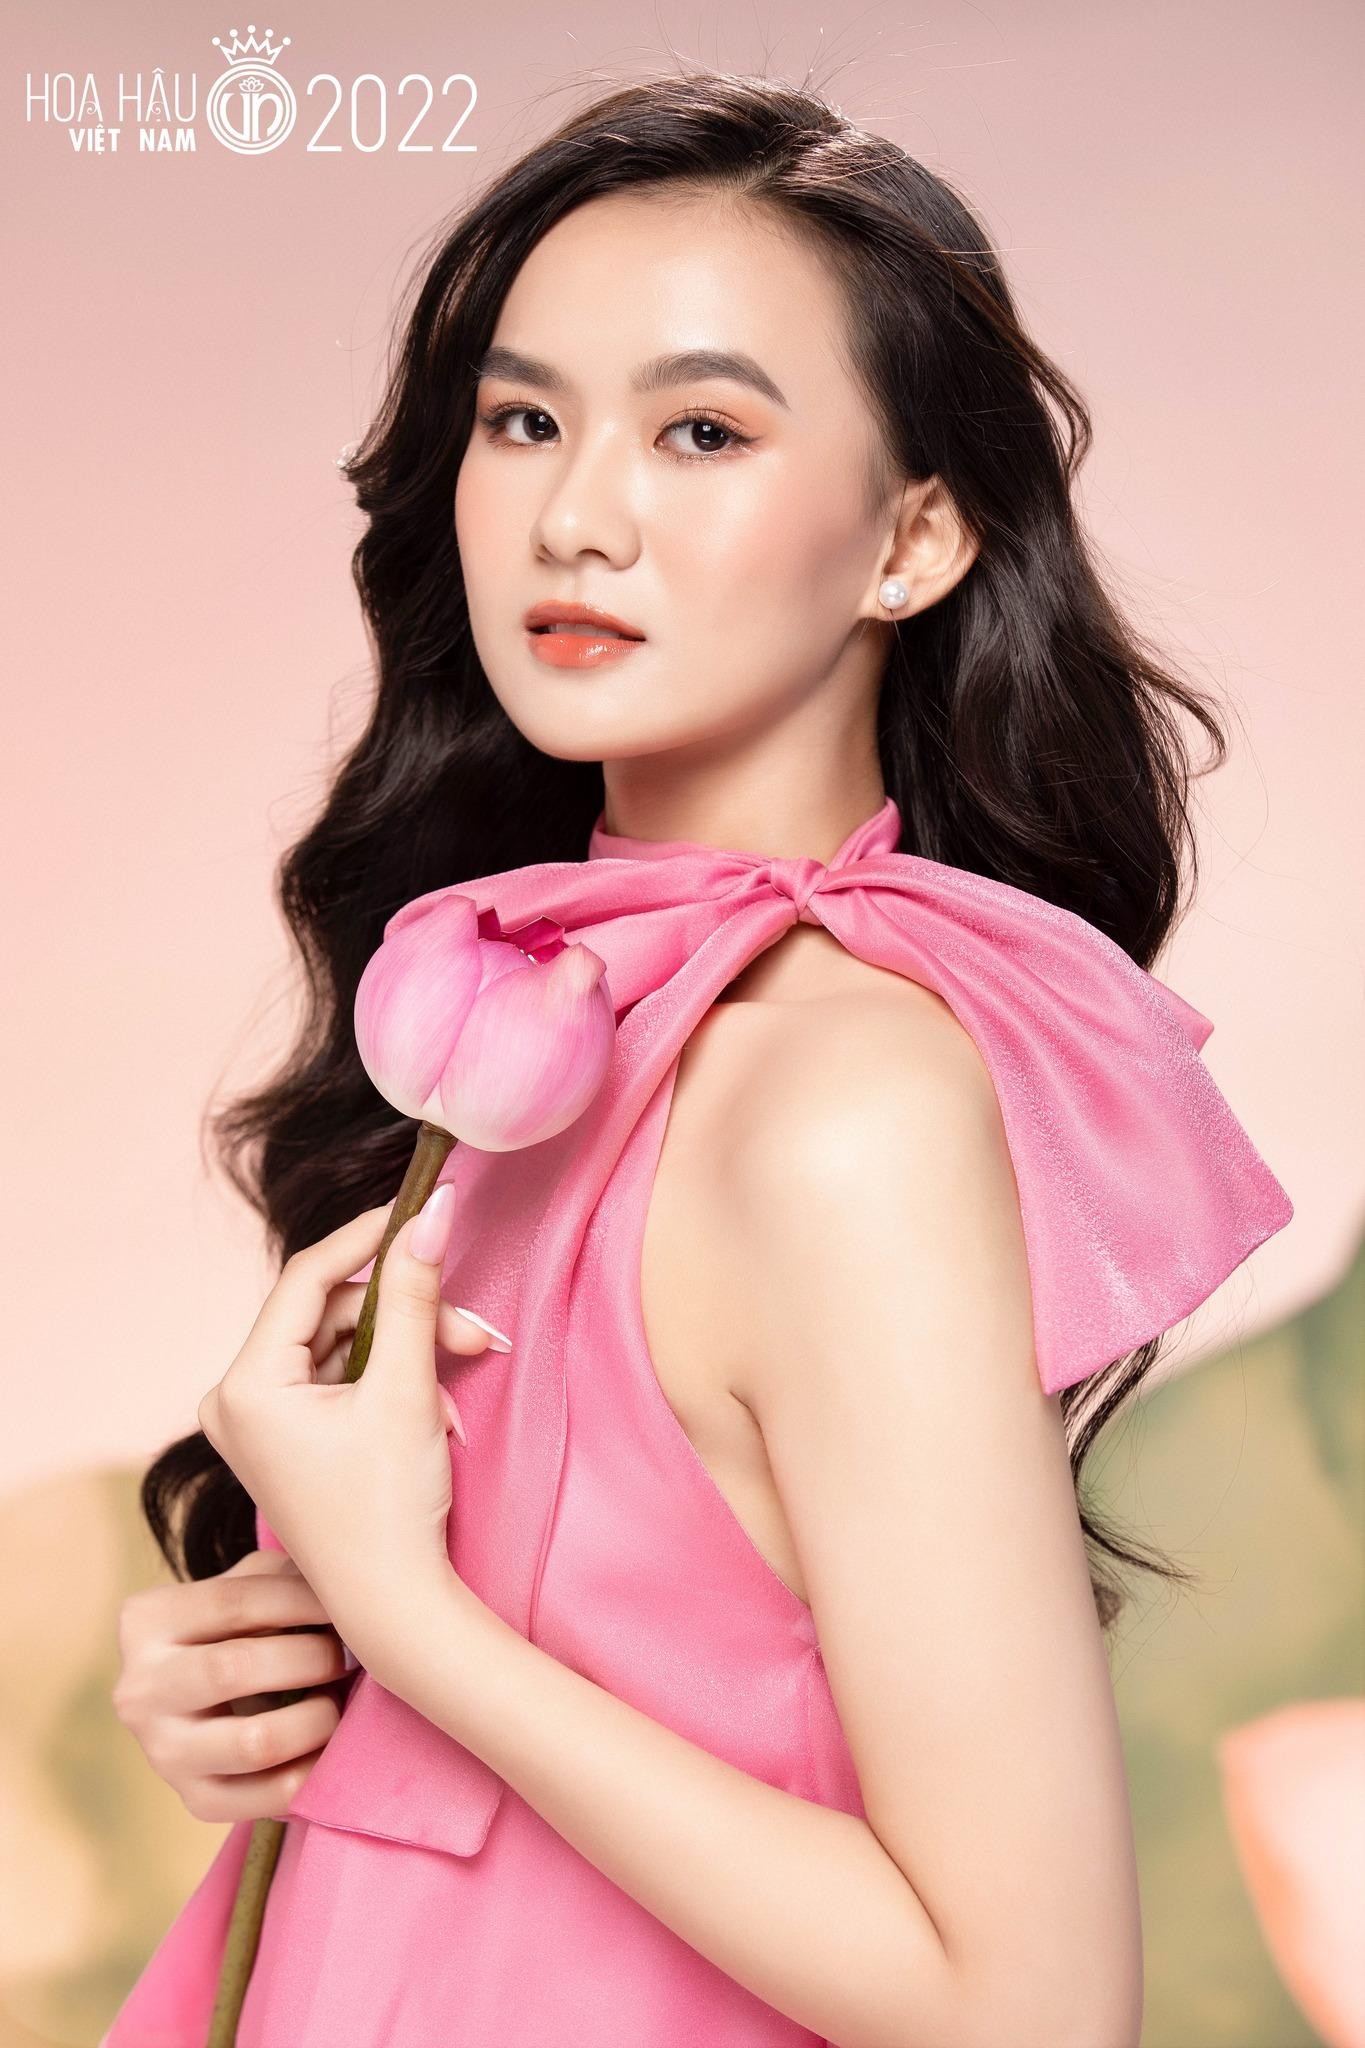 Nhan sắc cận của thí sinh Hoa hậu Việt Nam 2022 - Ảnh 12.